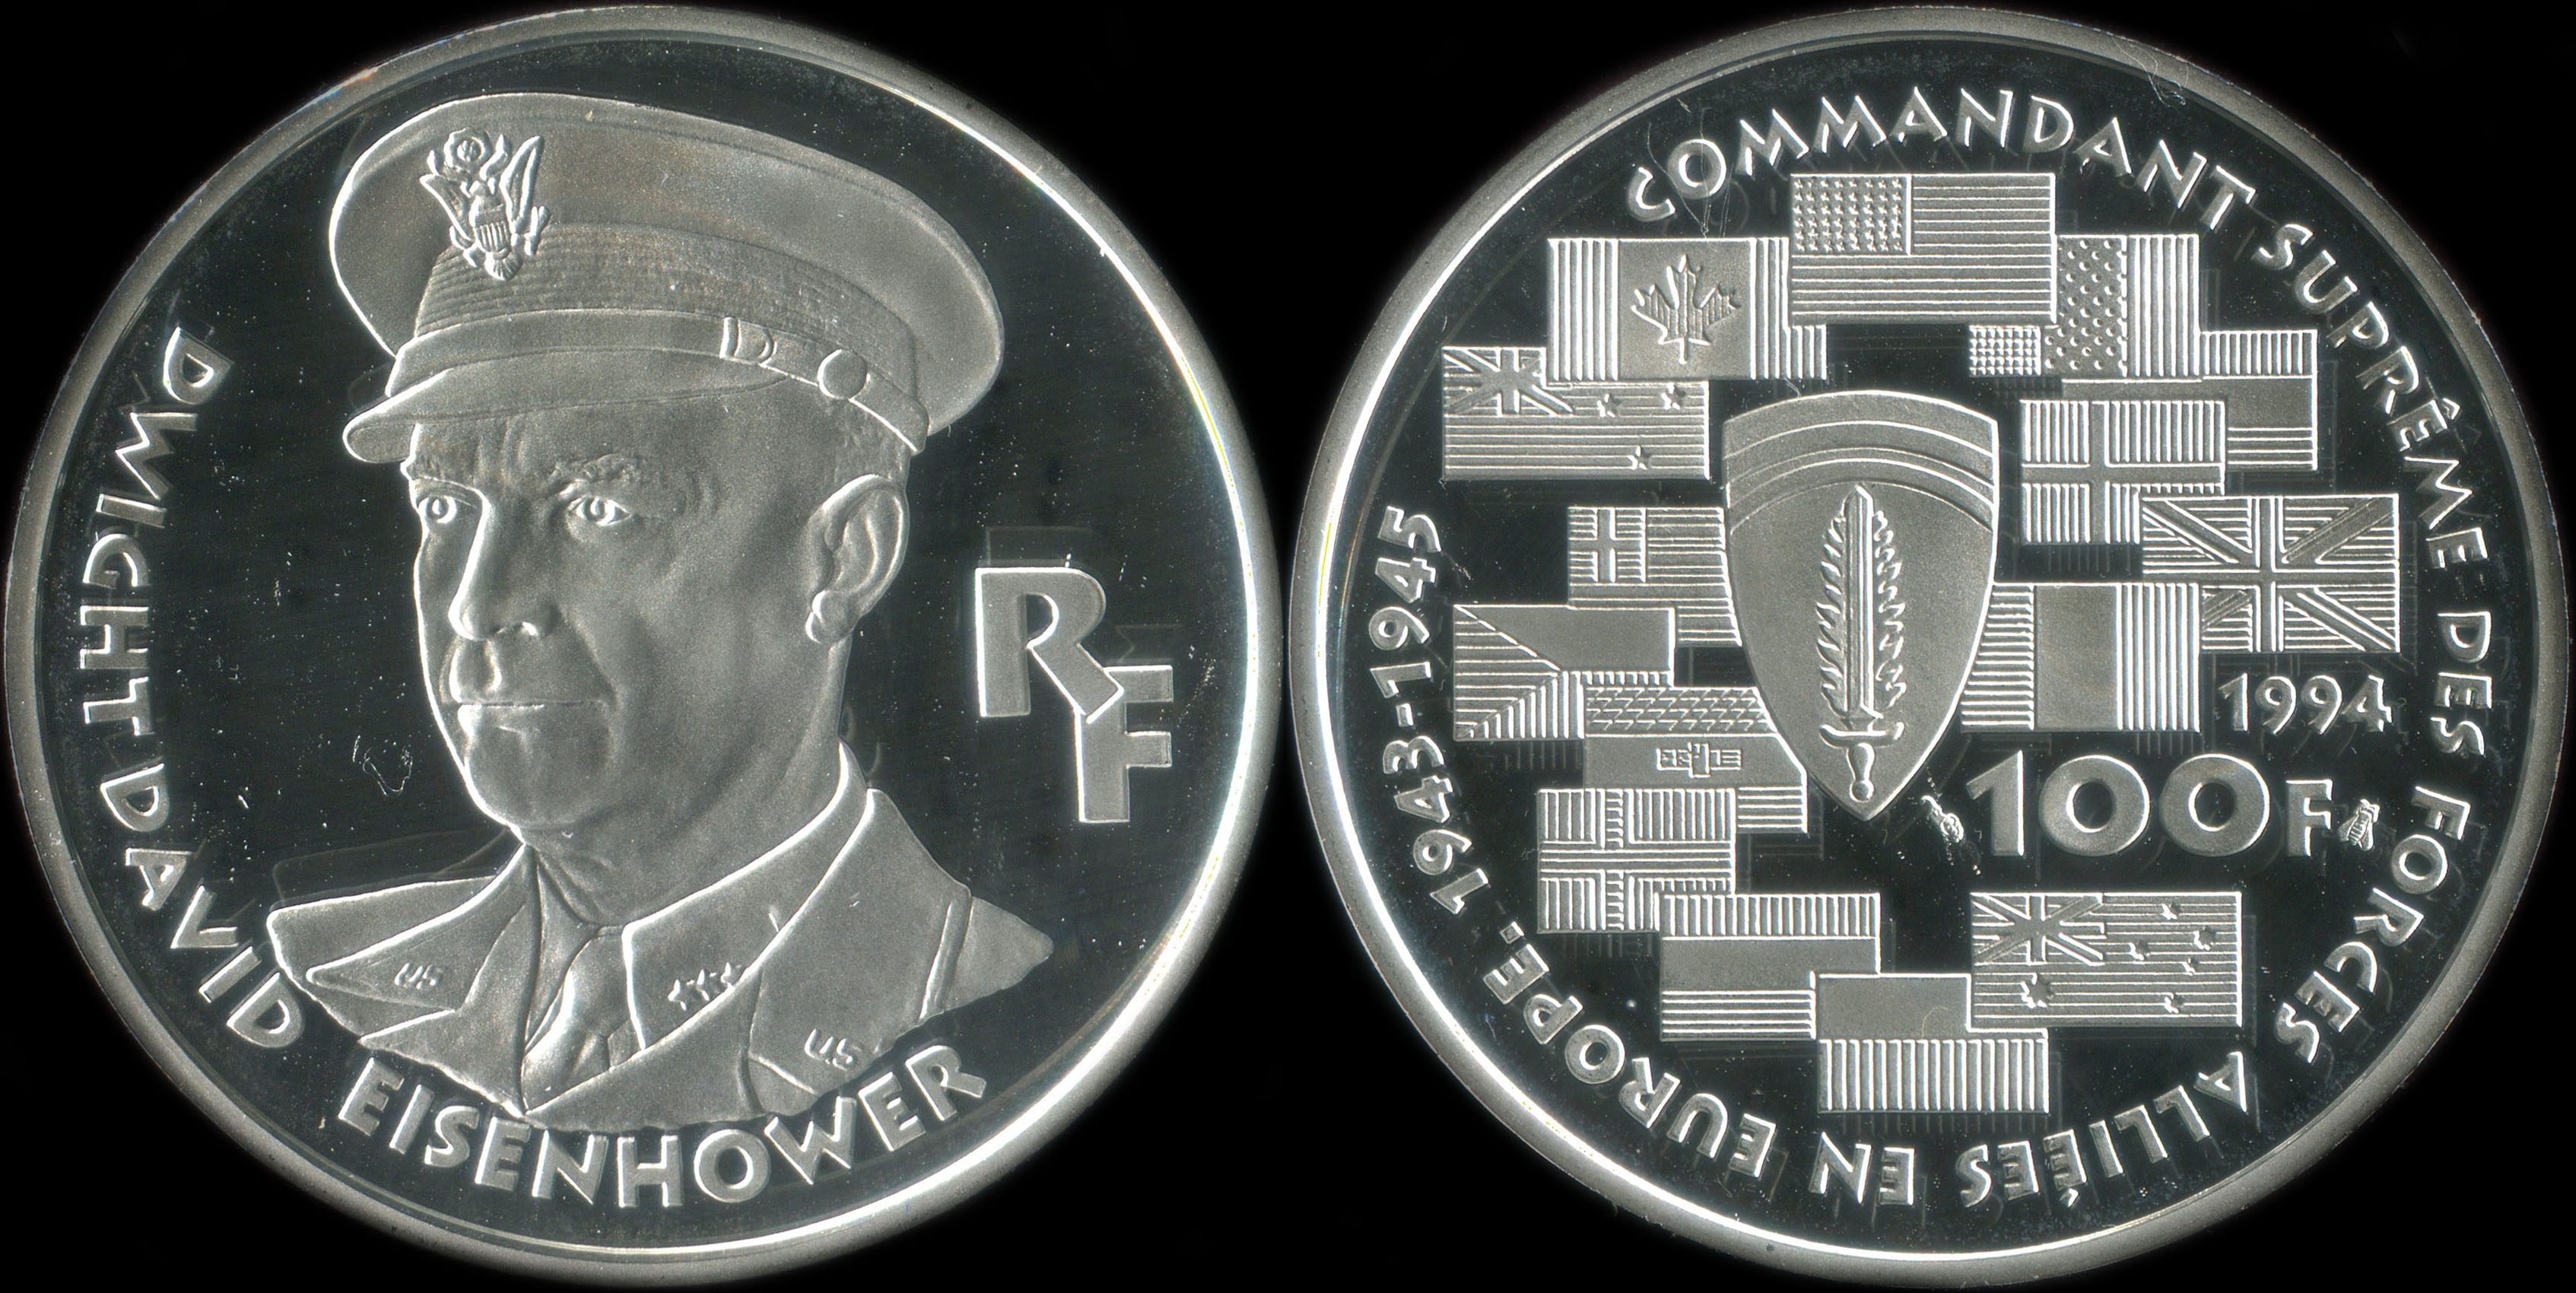 Pice de 100 francs 1994 - La Libert retrouve - Dwight David Eisenhower